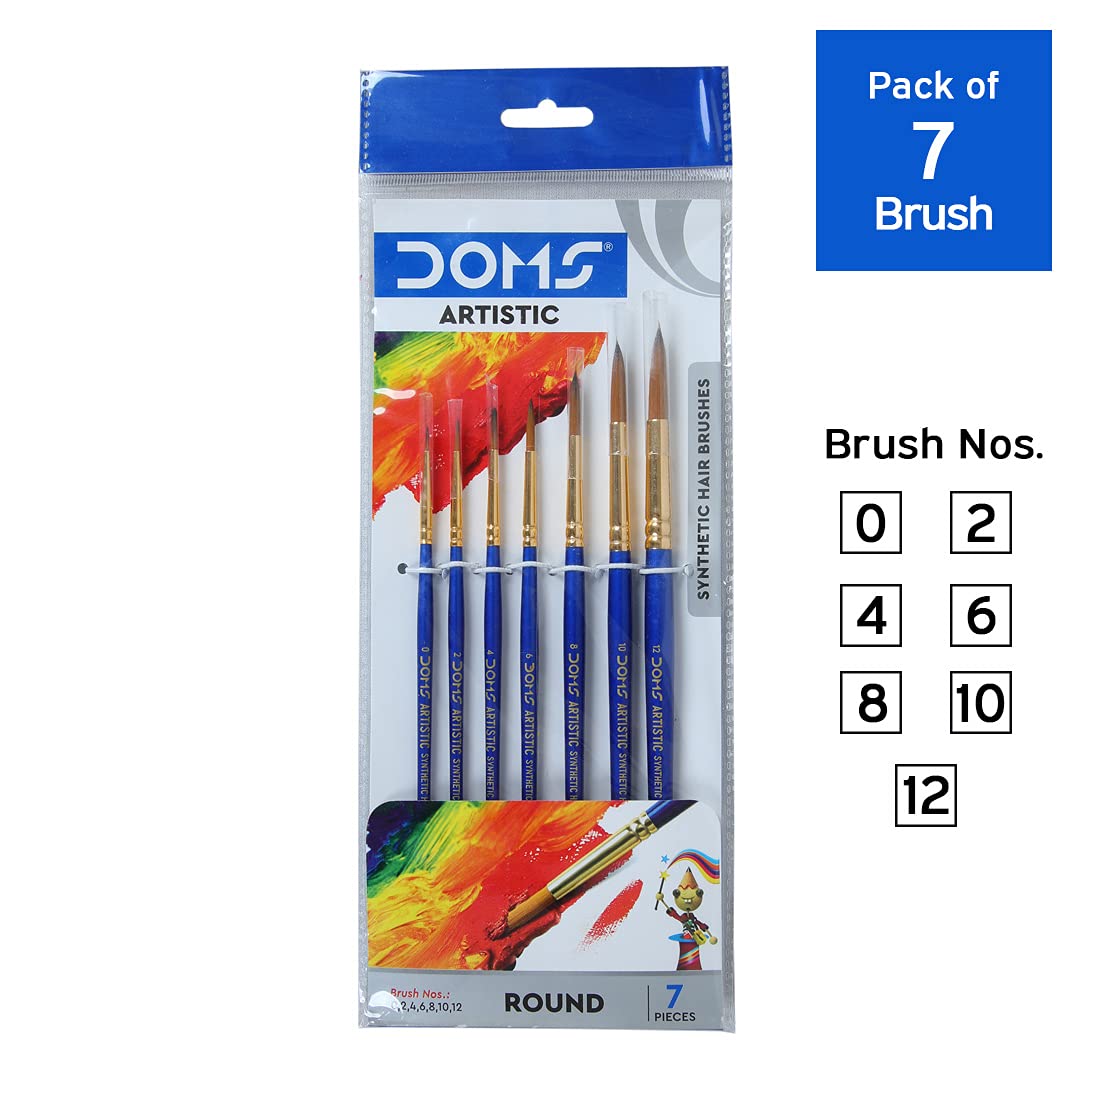 Round mix colours Doms Brush Pen